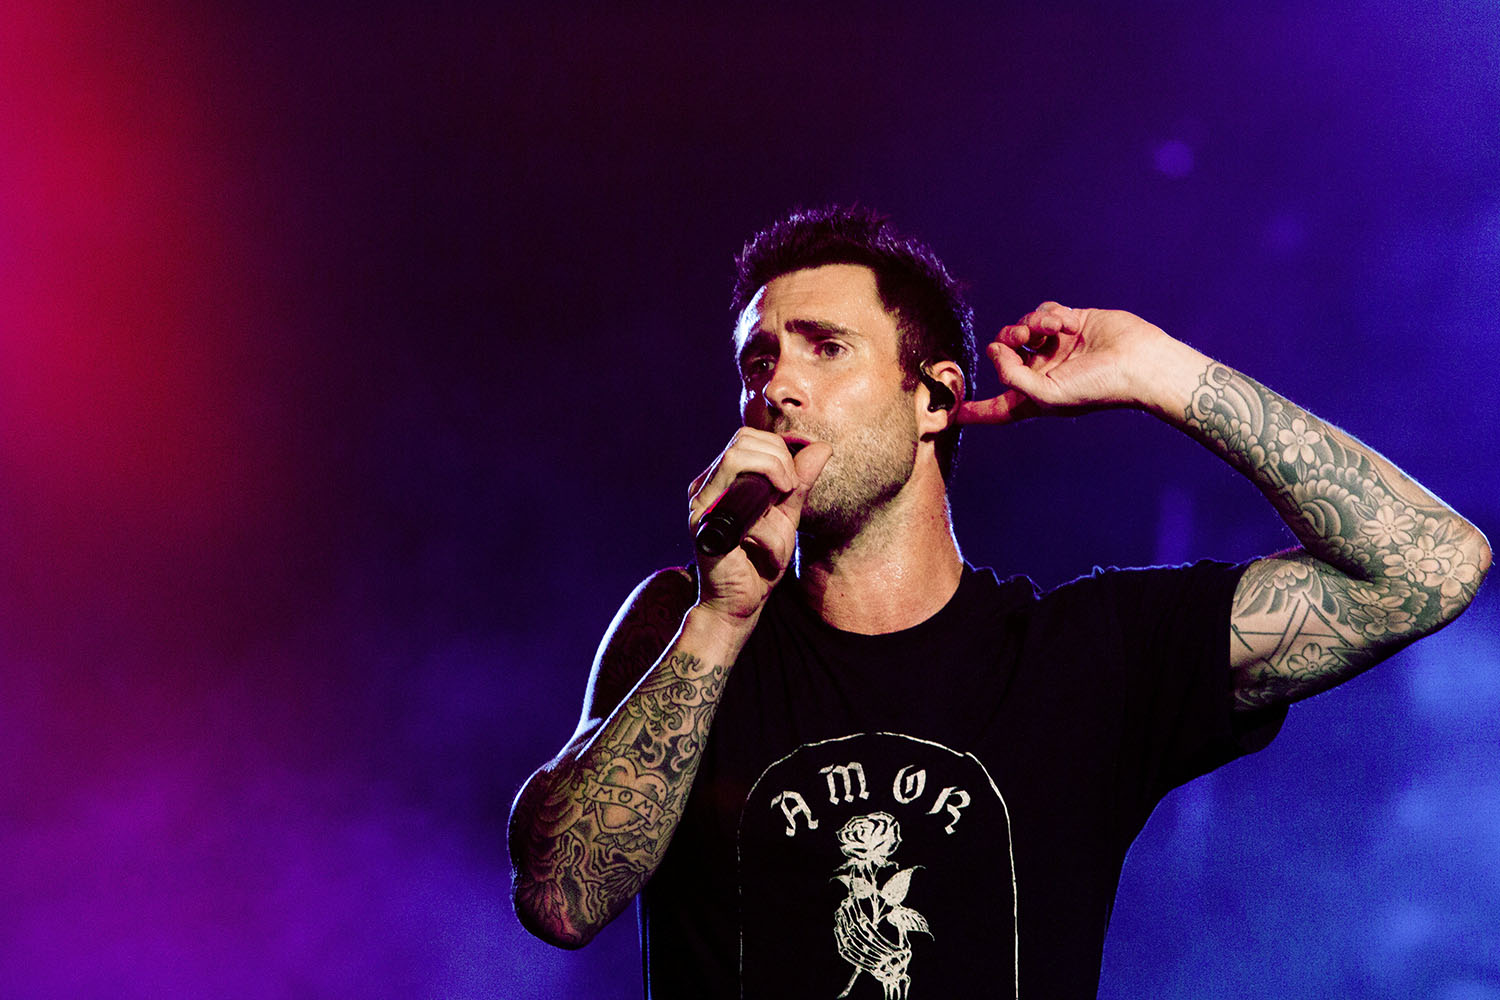 The Town confira a possível setlist de show do Maroon 5 no festival VEJA